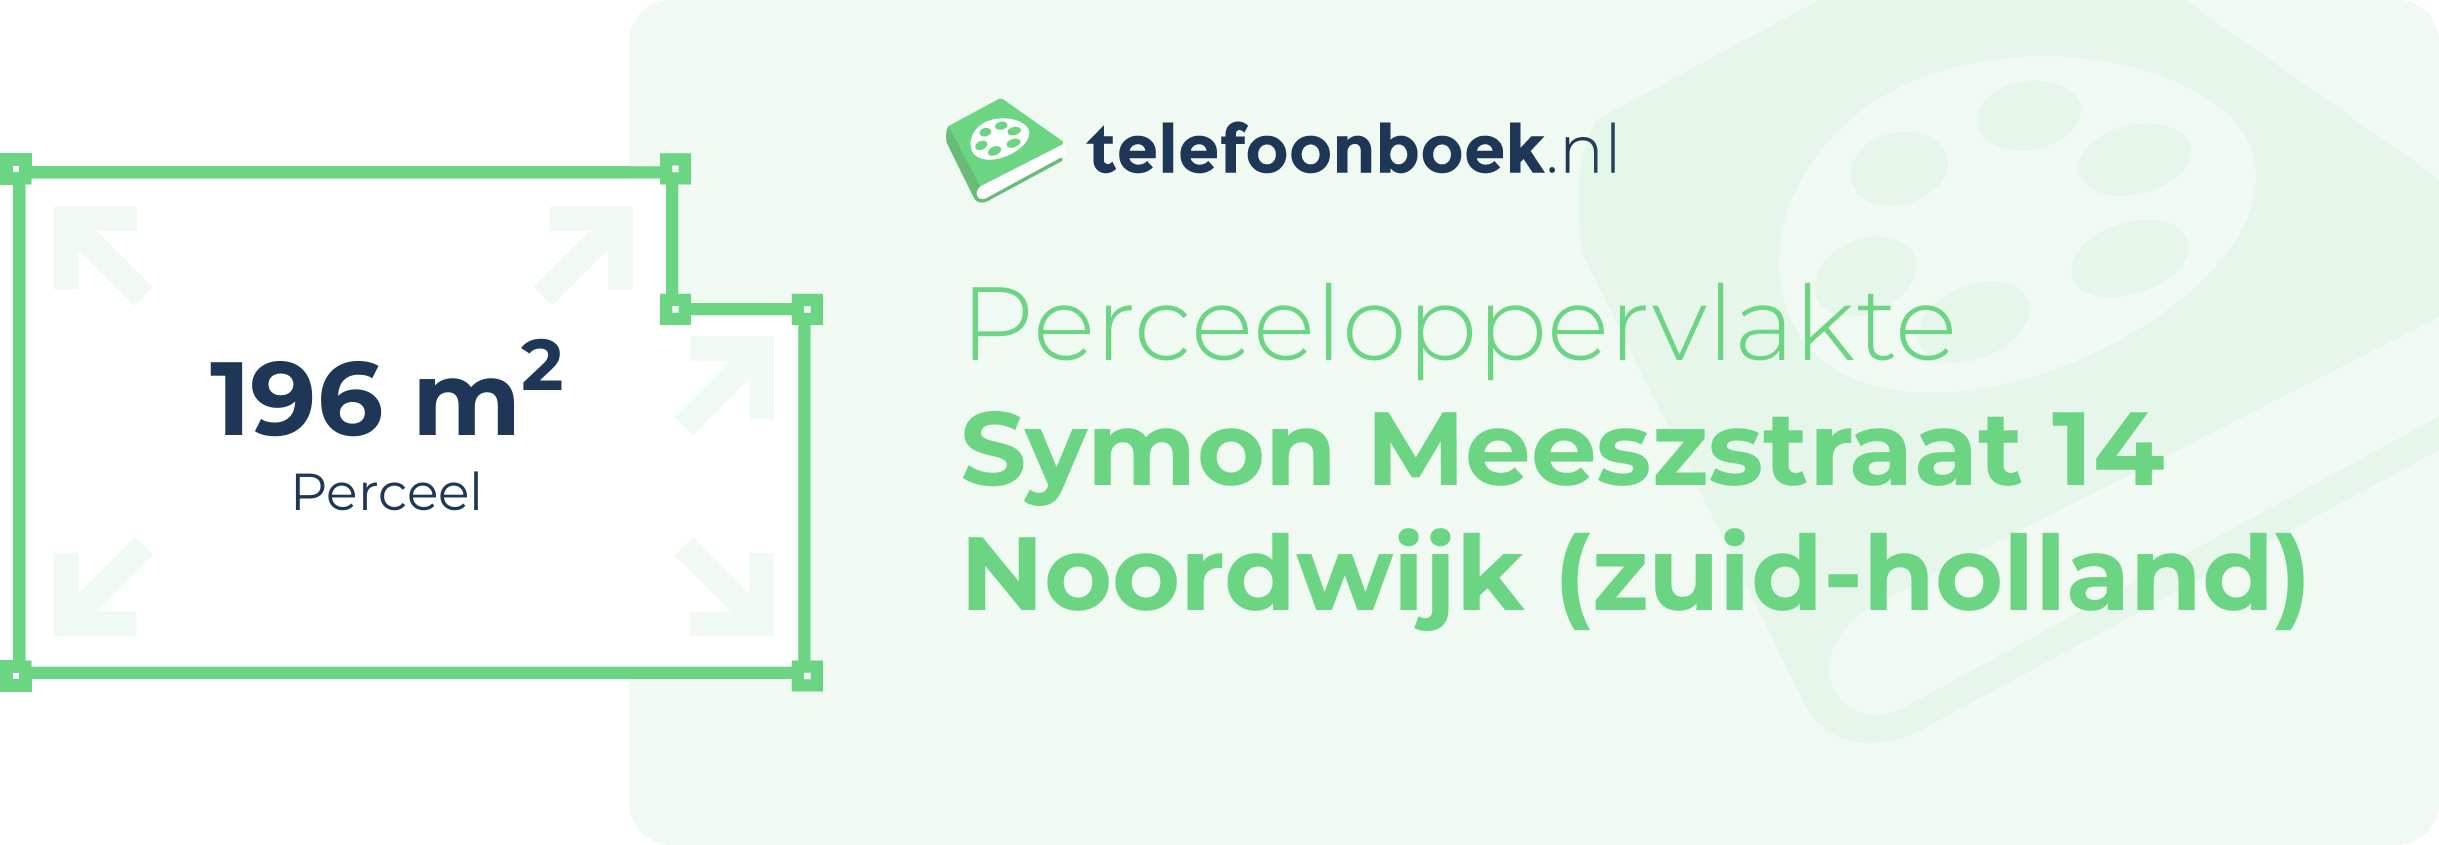 Perceeloppervlakte Symon Meeszstraat 14 Noordwijk (Zuid-Holland)